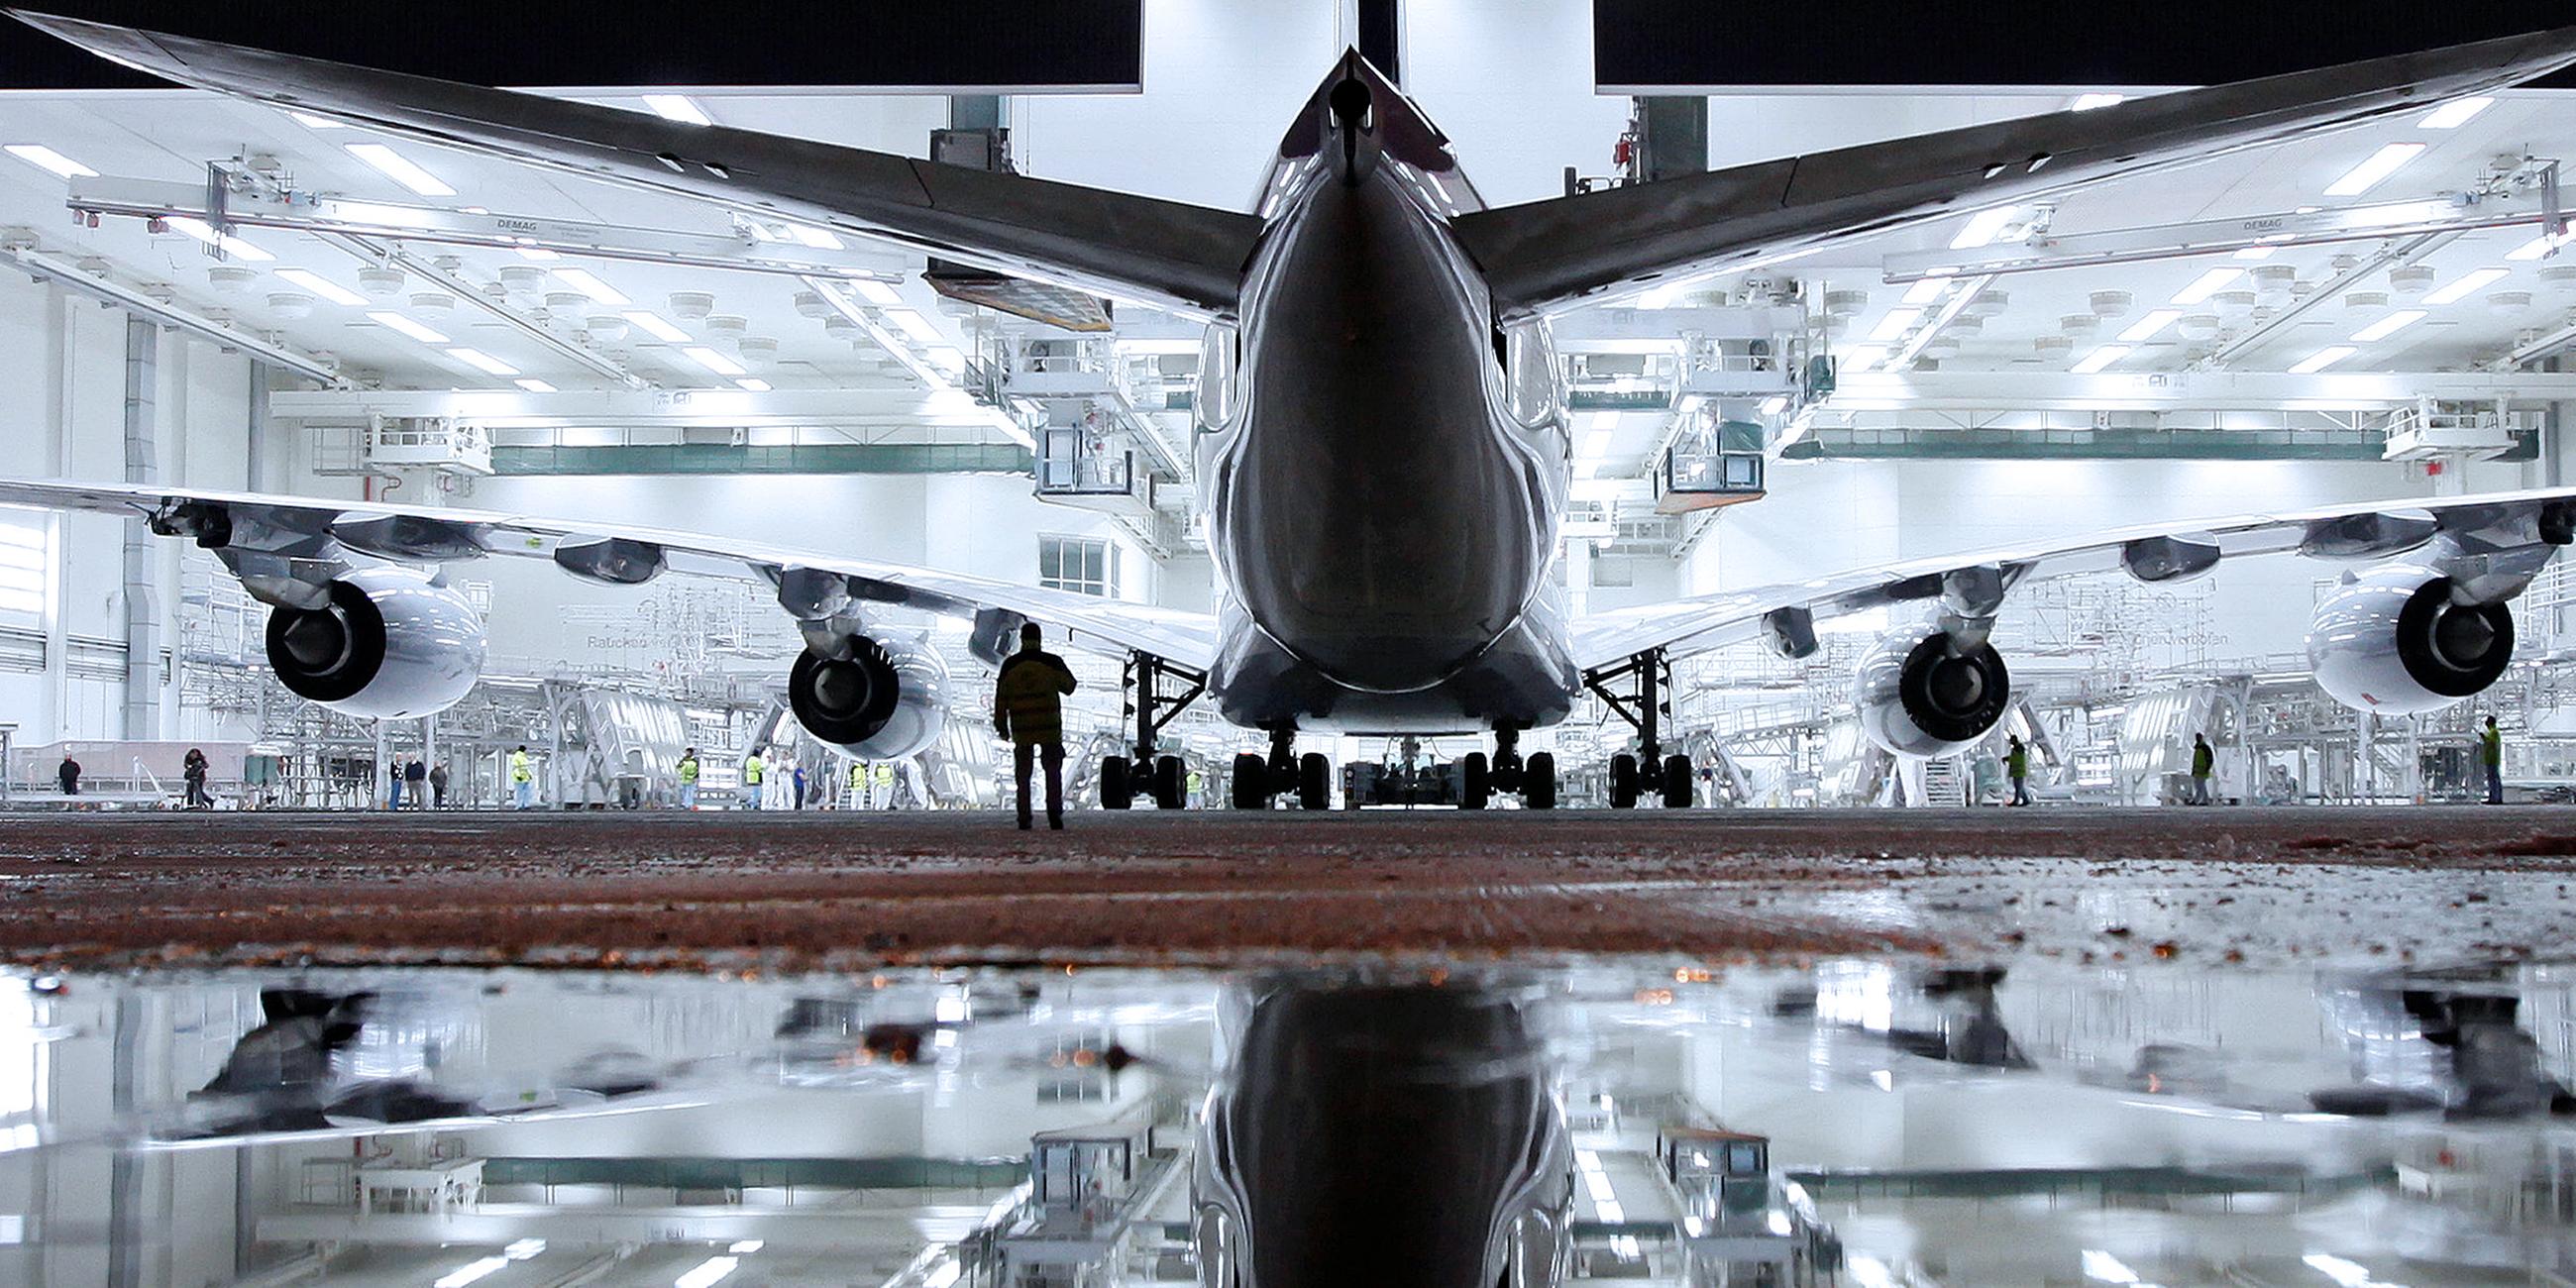 Archiv: Ein neuer Airbus A380 wurde frisch lackiert in einem Hangar in Finkenwerder bei Hamburg.